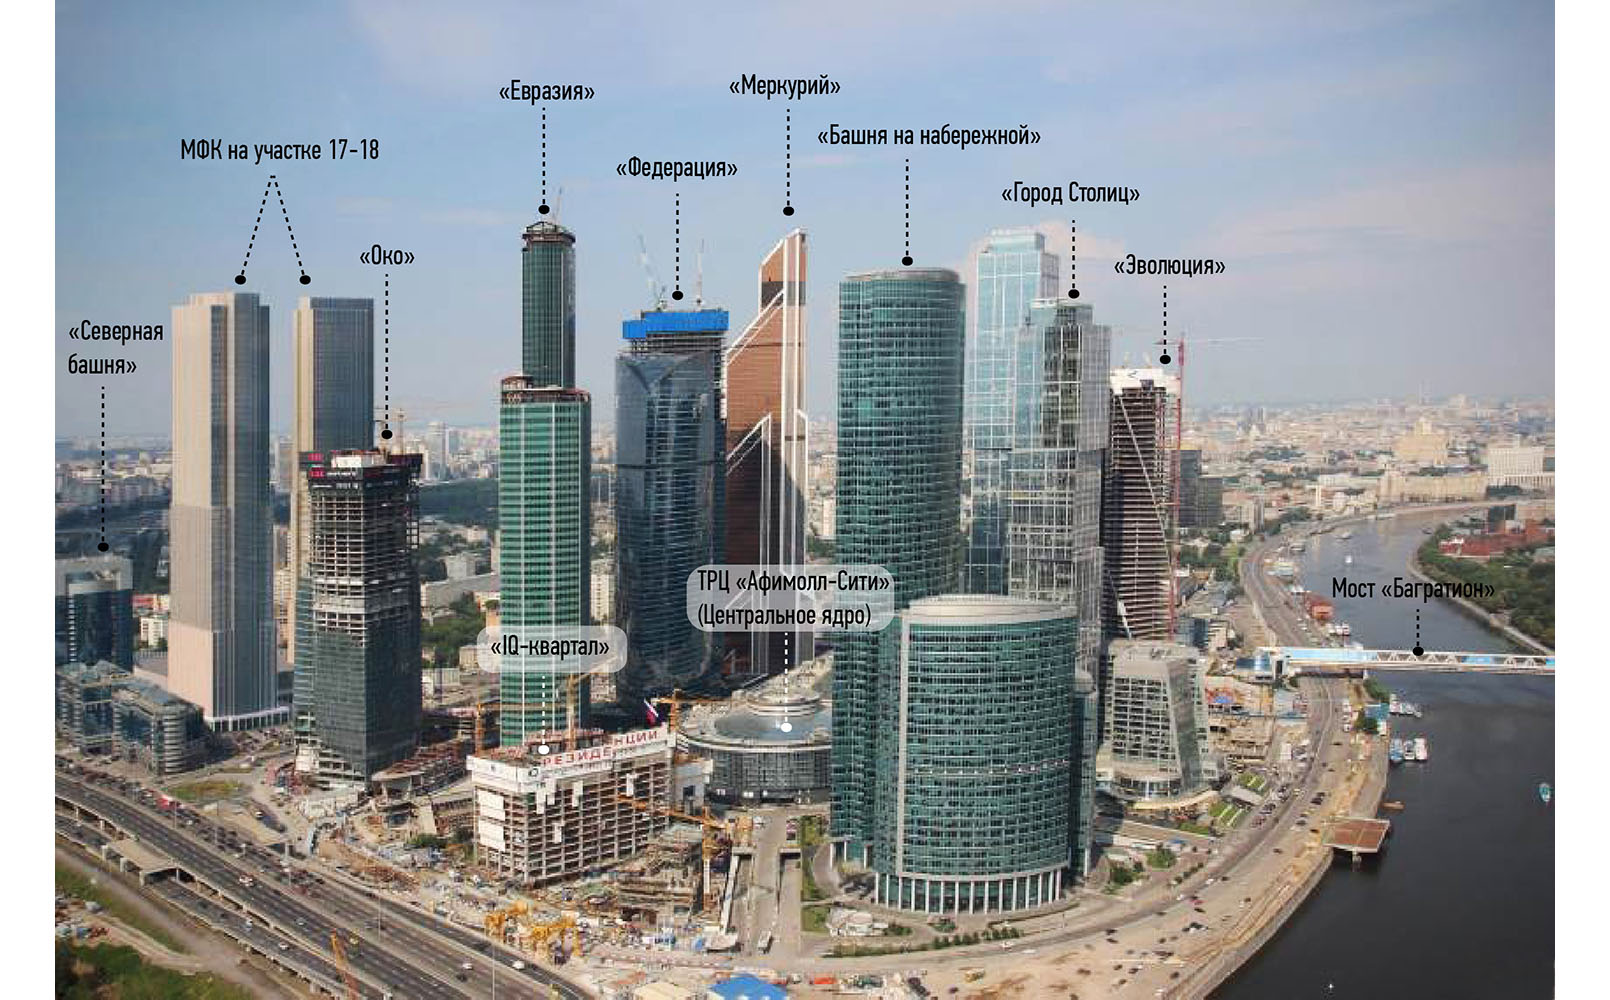 Высокие здания в россии на английском